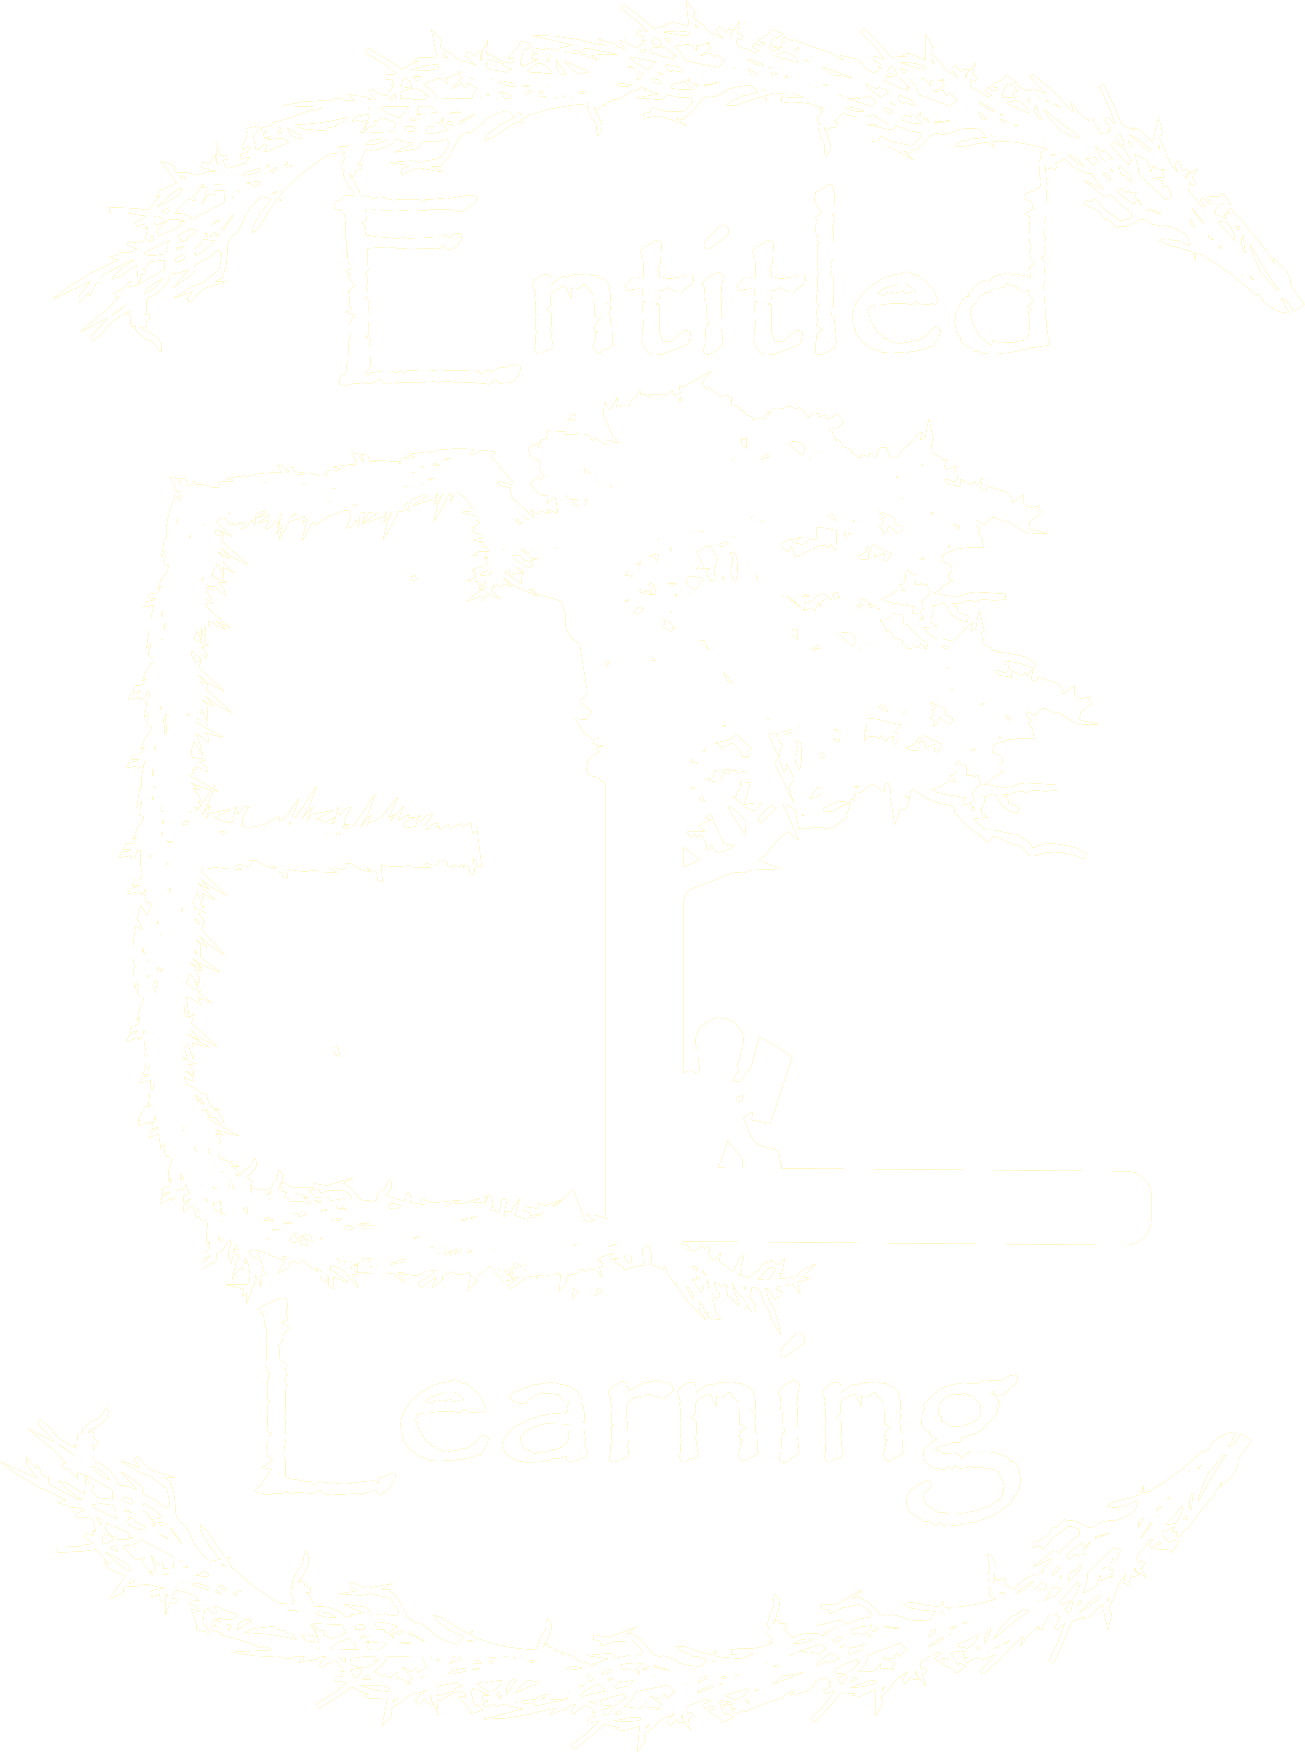 Entitled Learning